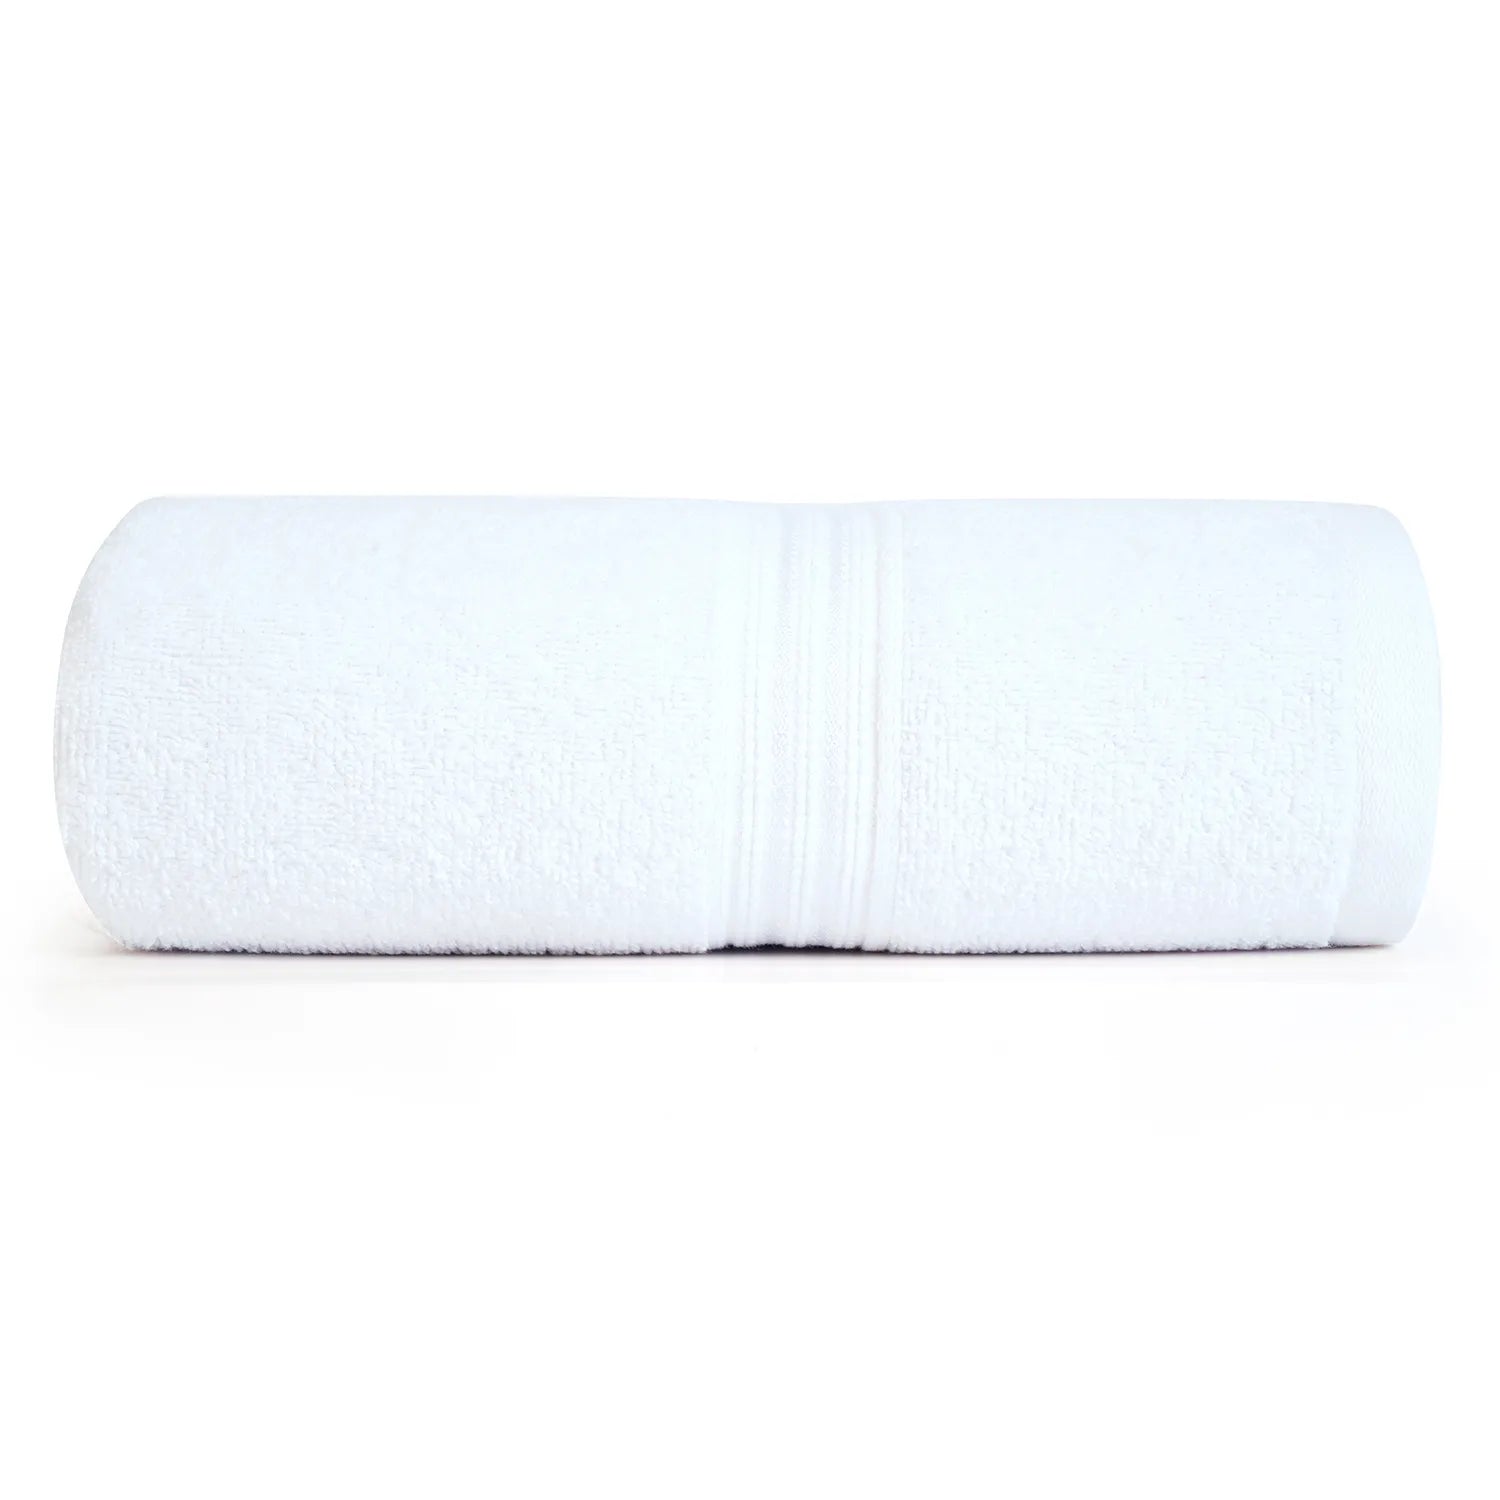 Bath towel, bamboo towel, banana towel, bath towel